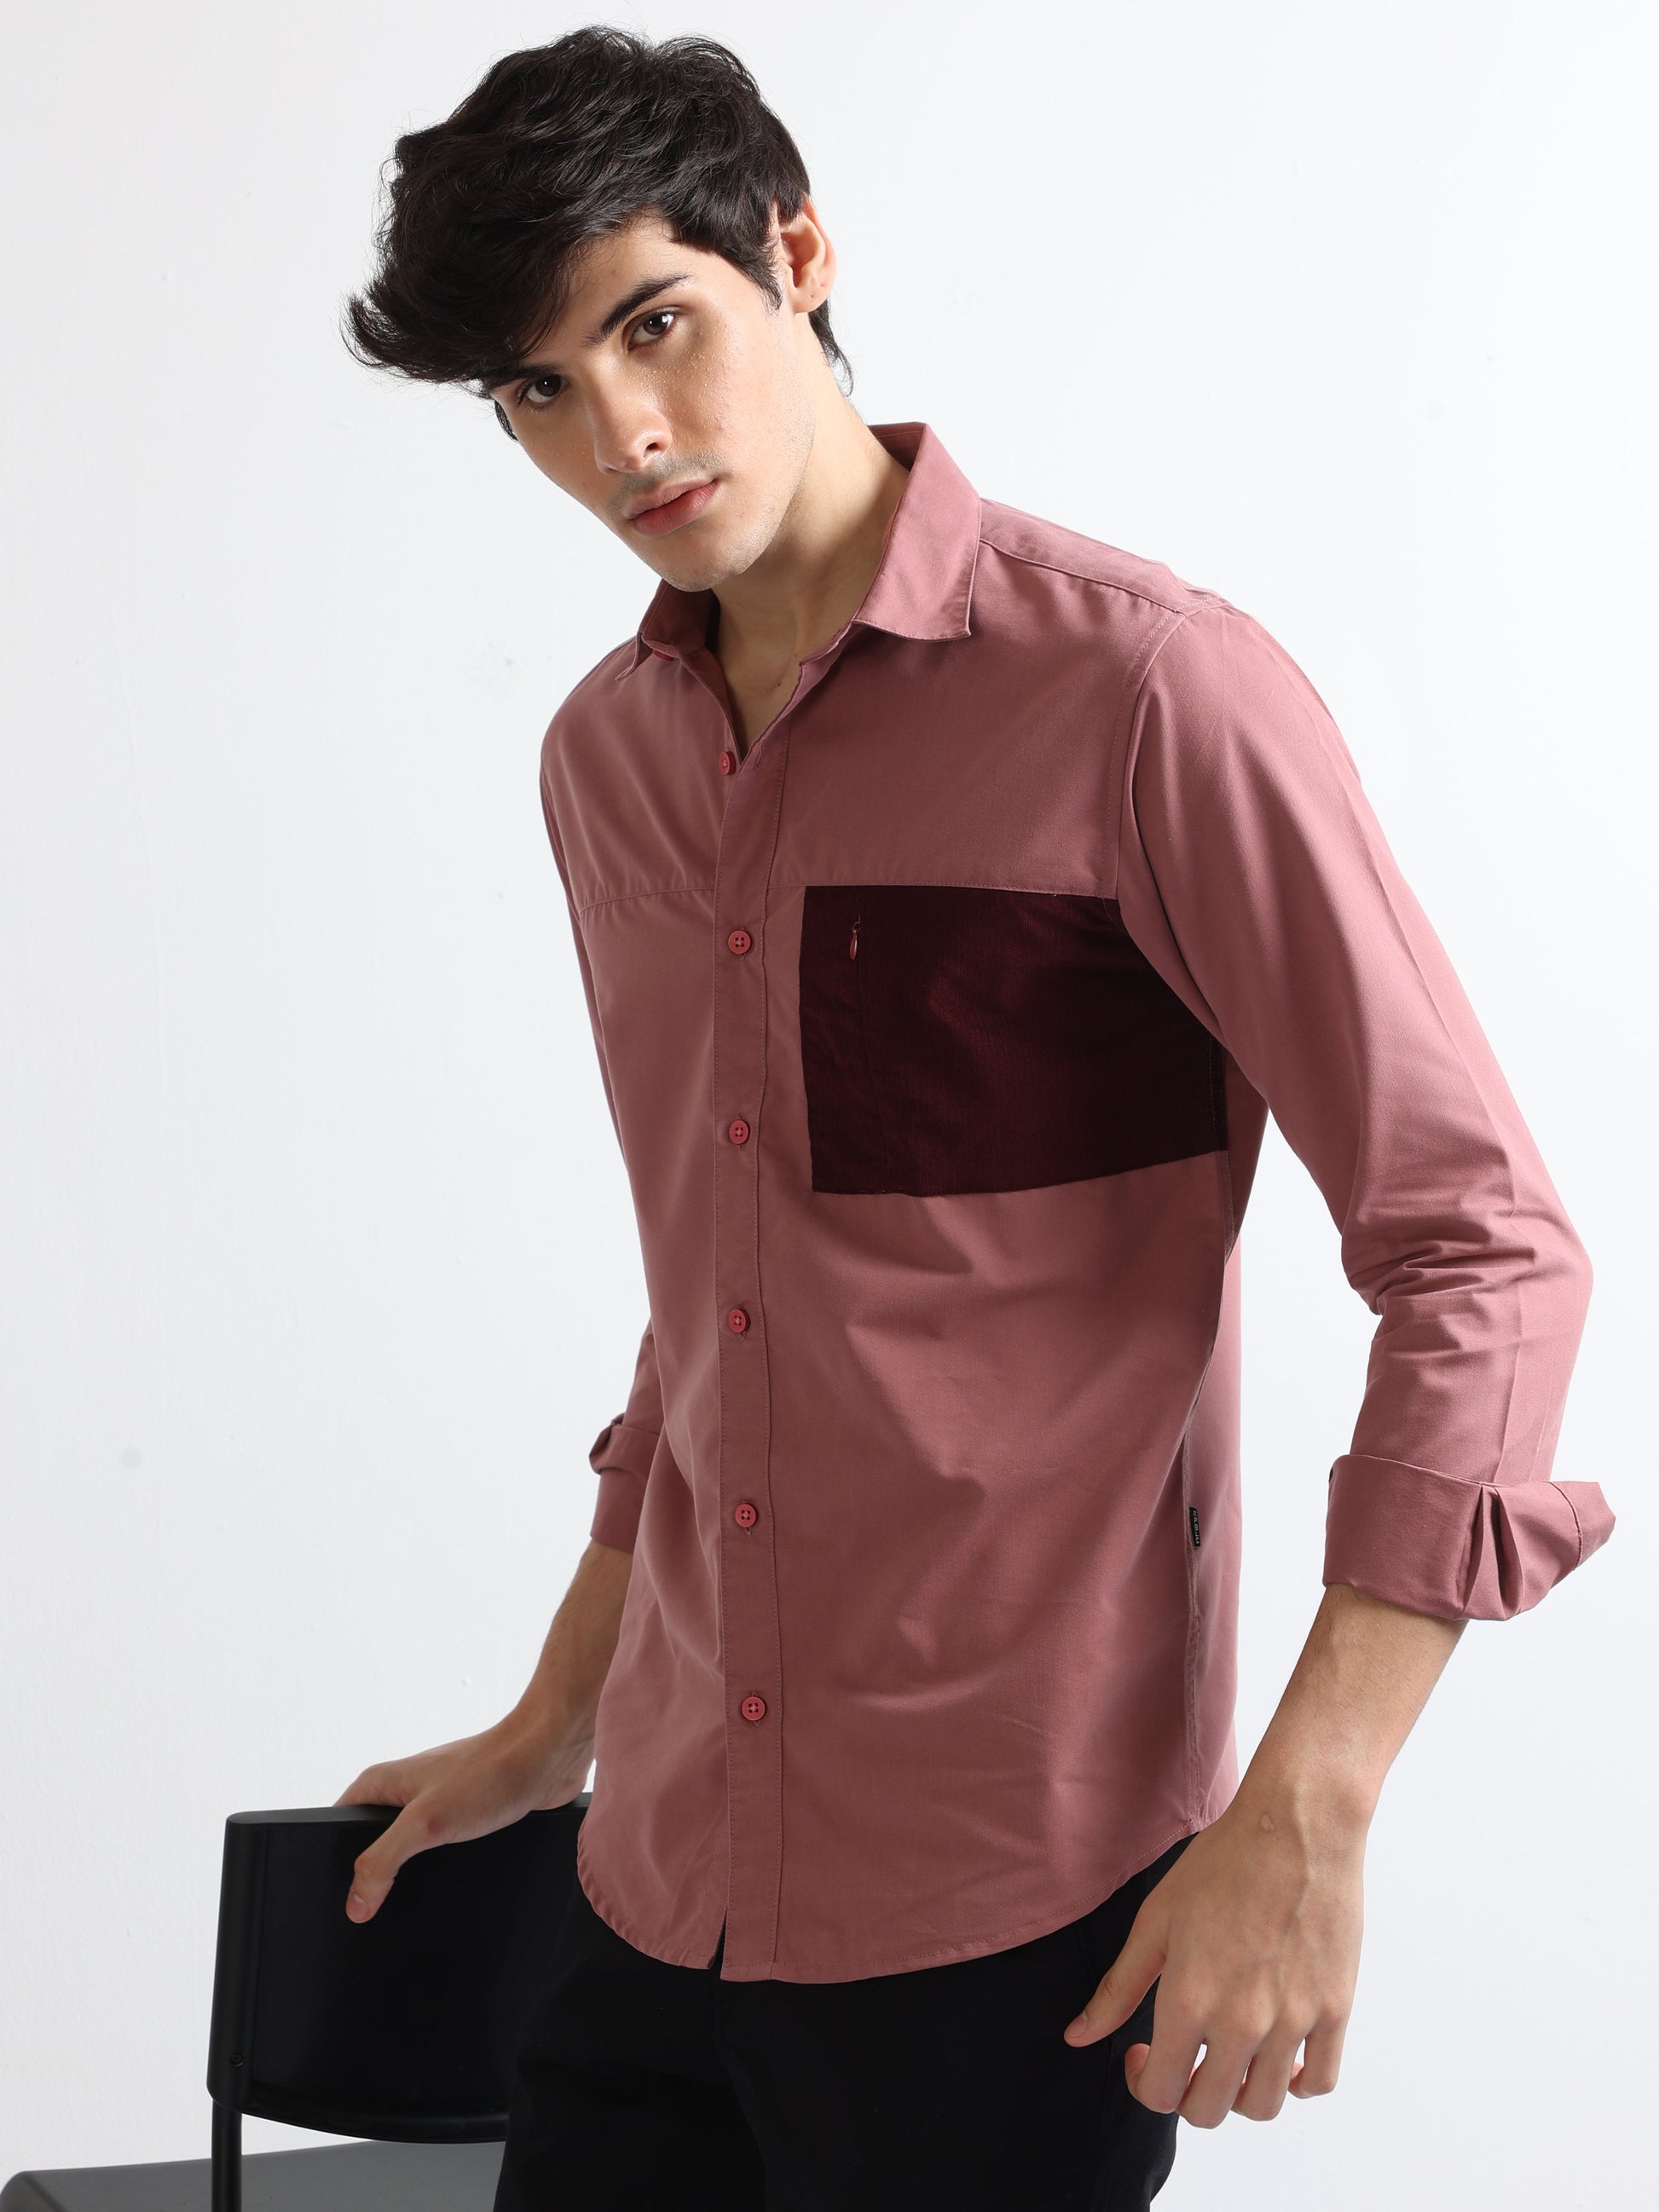 Buy Finest Popline Corduroy Pocket Mens Stylish Shirt Online.